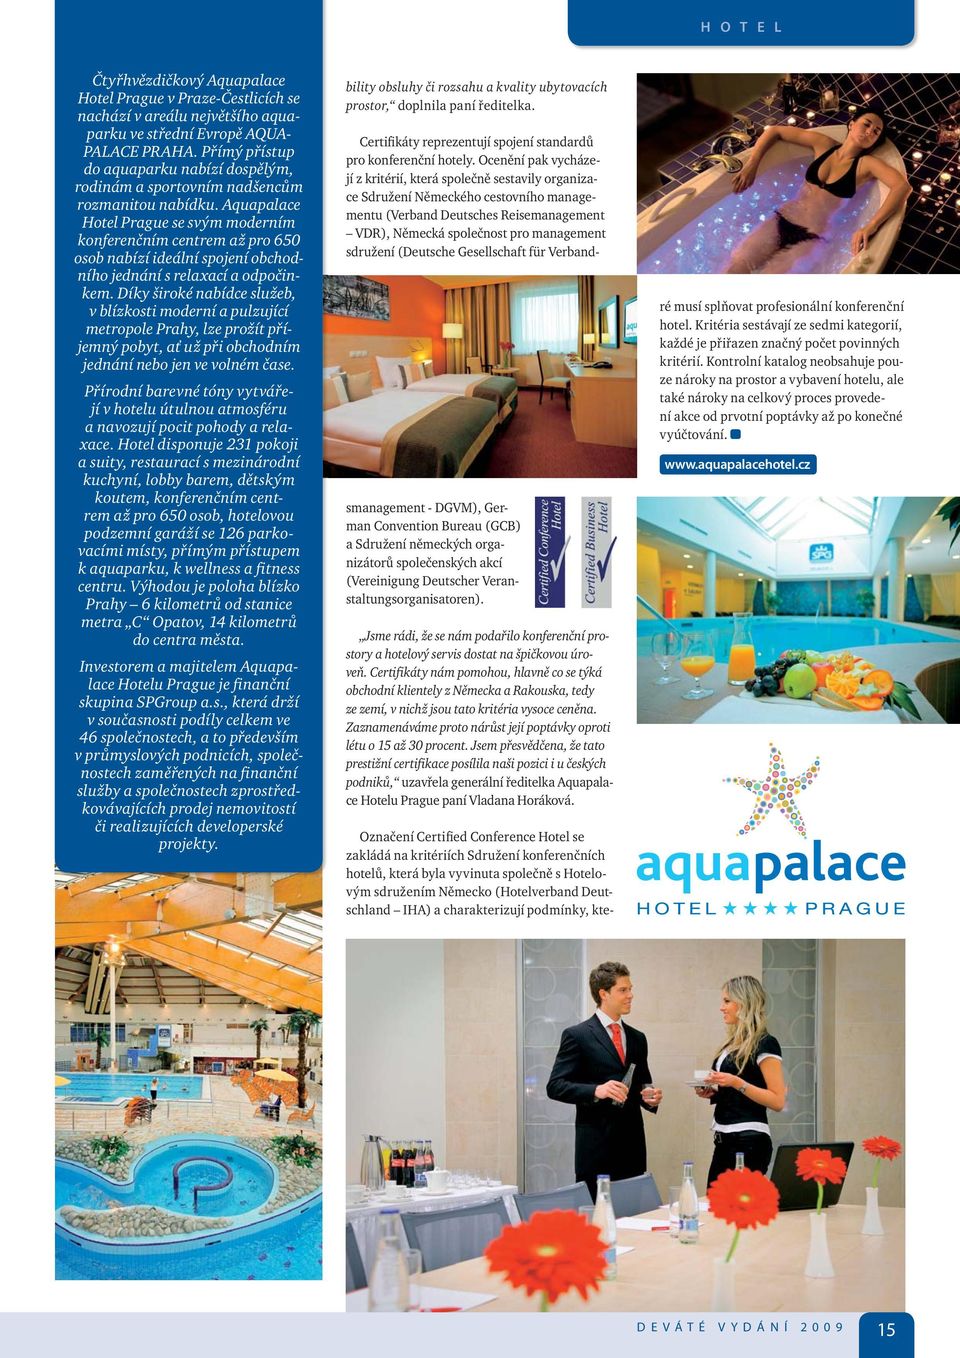 Aquapalace Hotel Prague se svým moderním konferenčním centrem až pro 650 osob nabízí ideální spojení obchodního jednání s relaxací a odpočinkem.